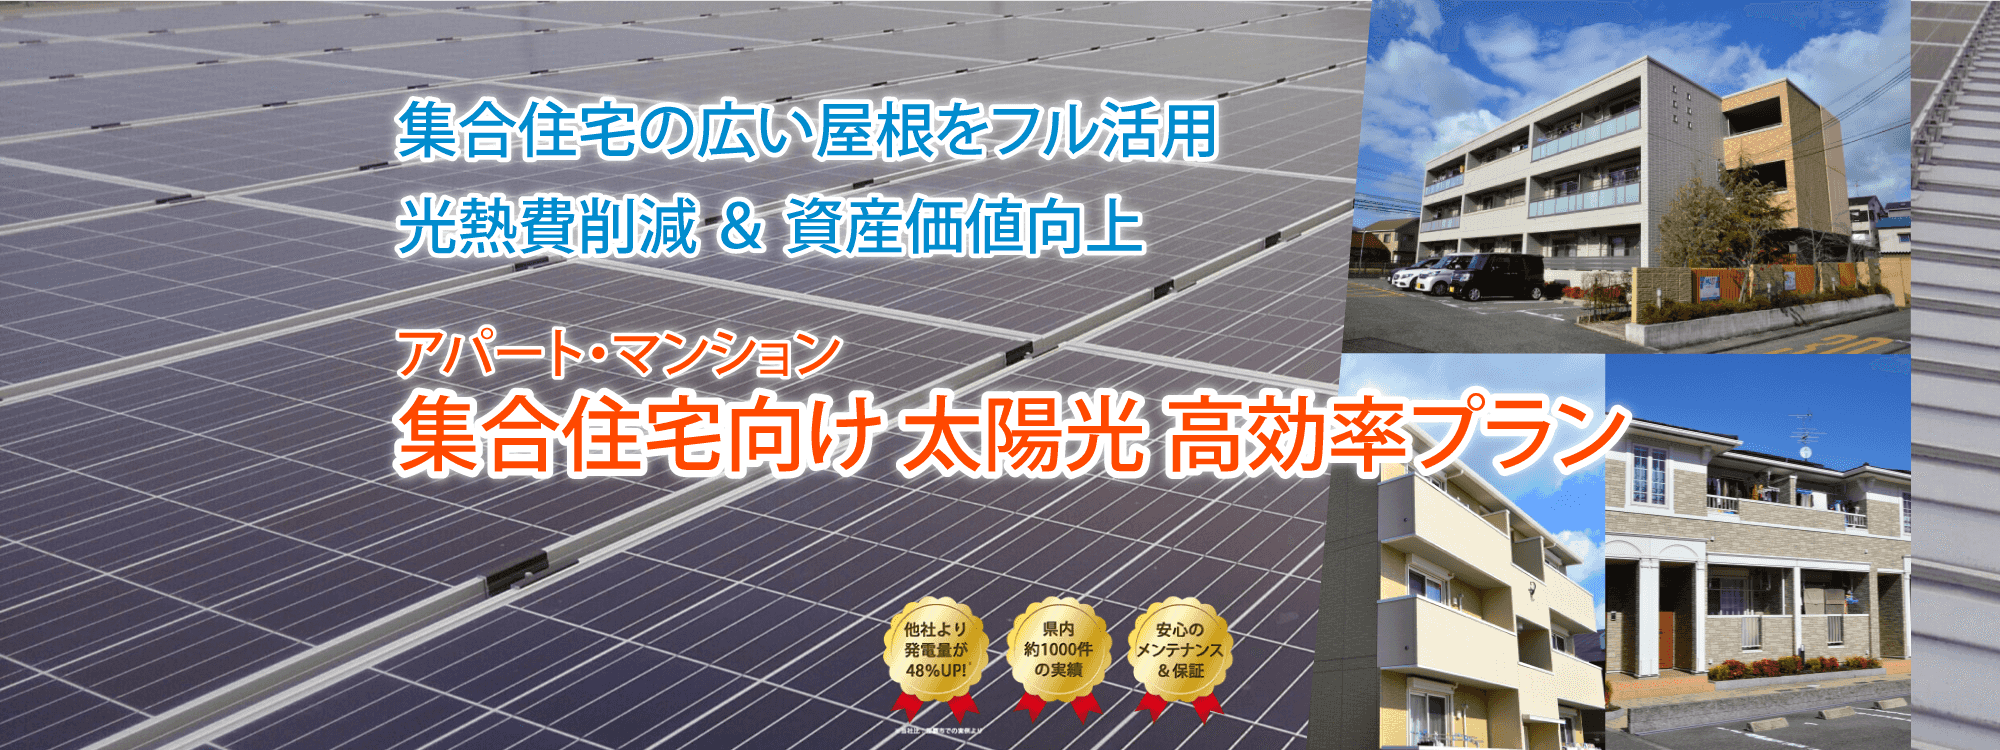 沖縄の集合住宅向け太陽光発電・蓄電システム